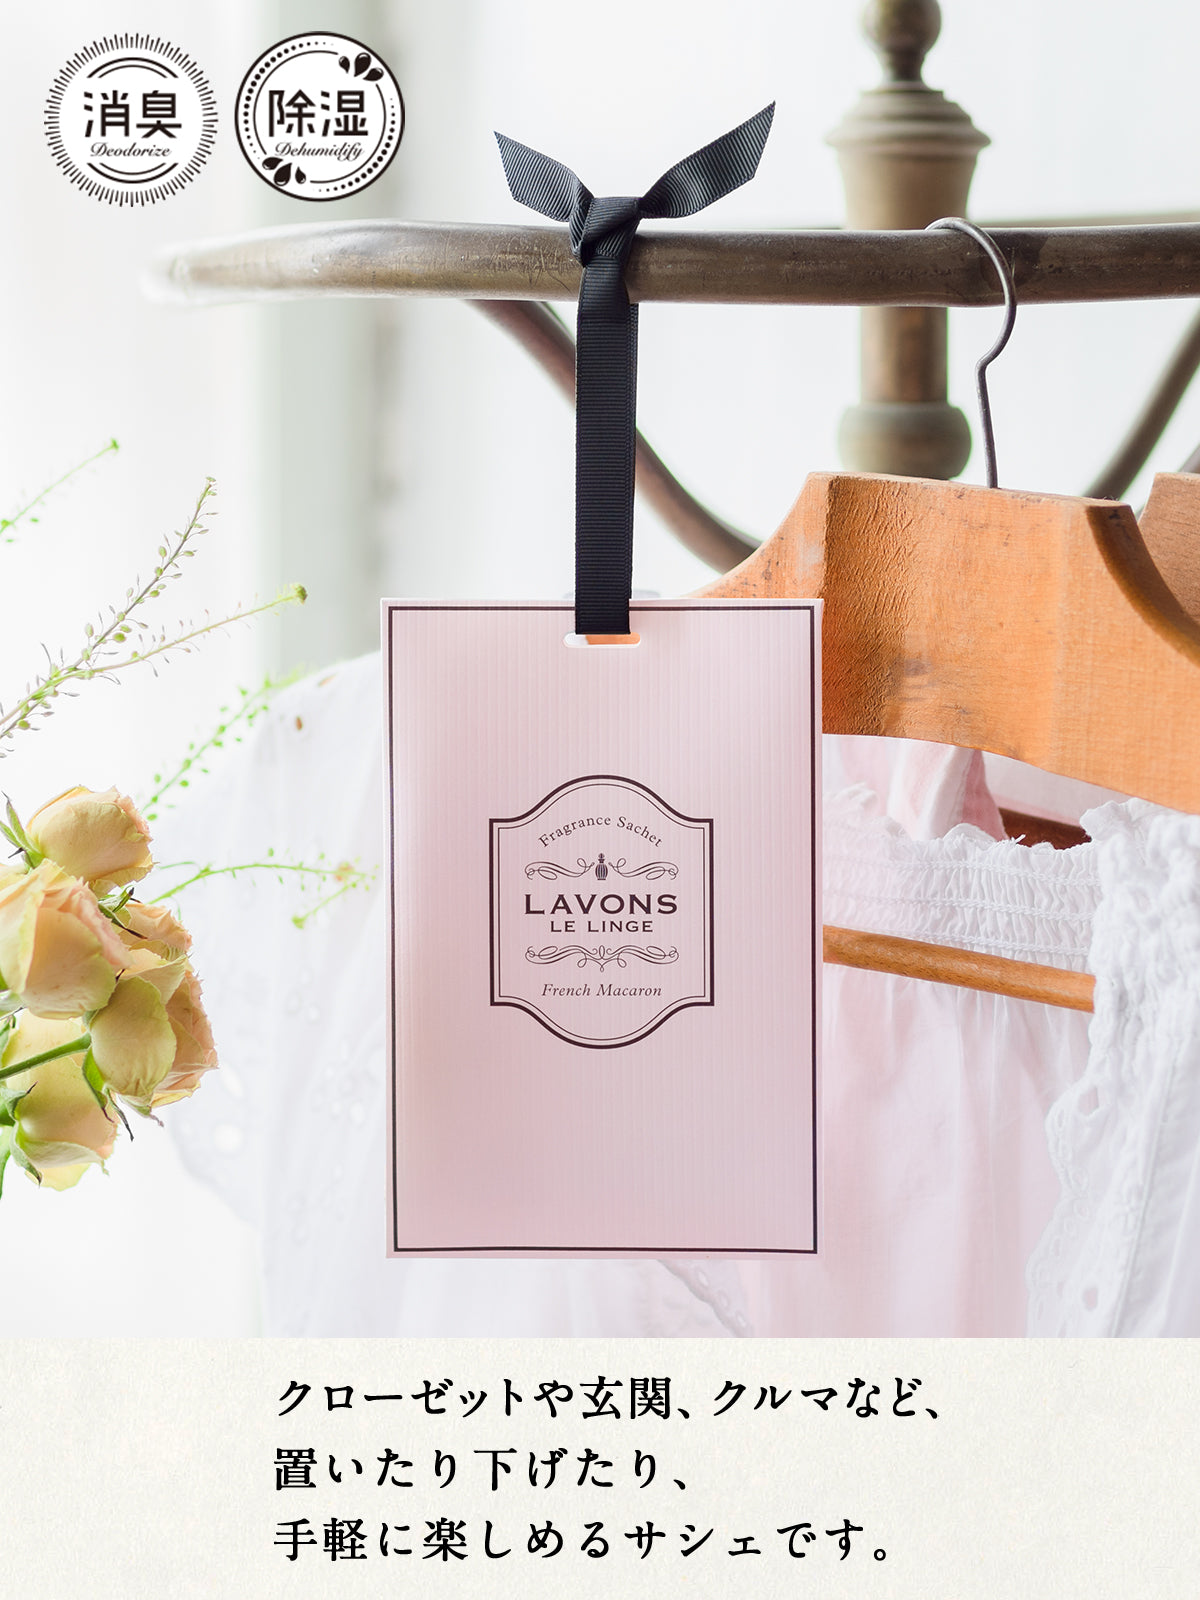 【メール便無料】香りサシェ アソートセット ラボン 20g×4個